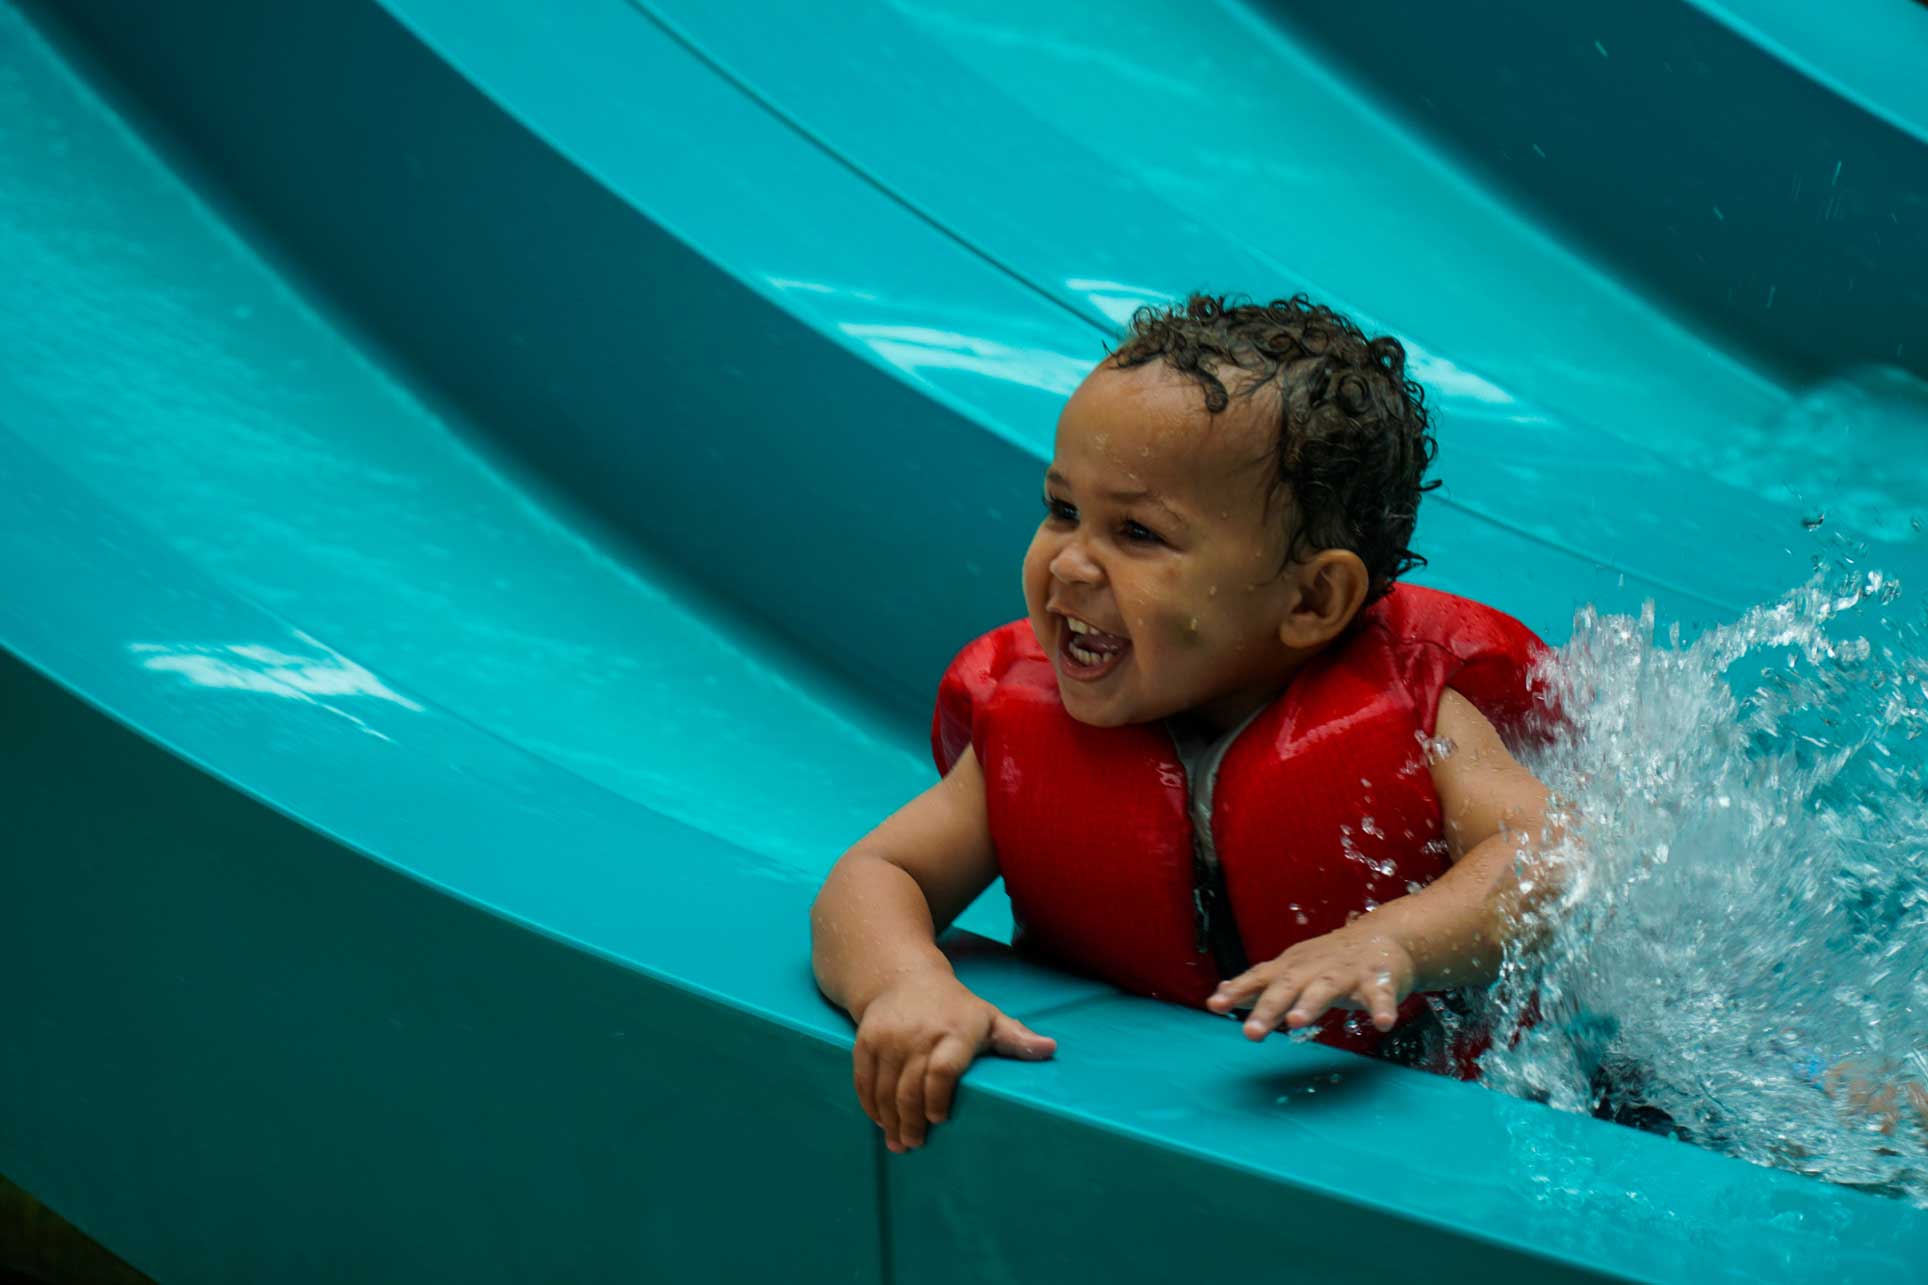 Soaring Eagle baby smiling on slide